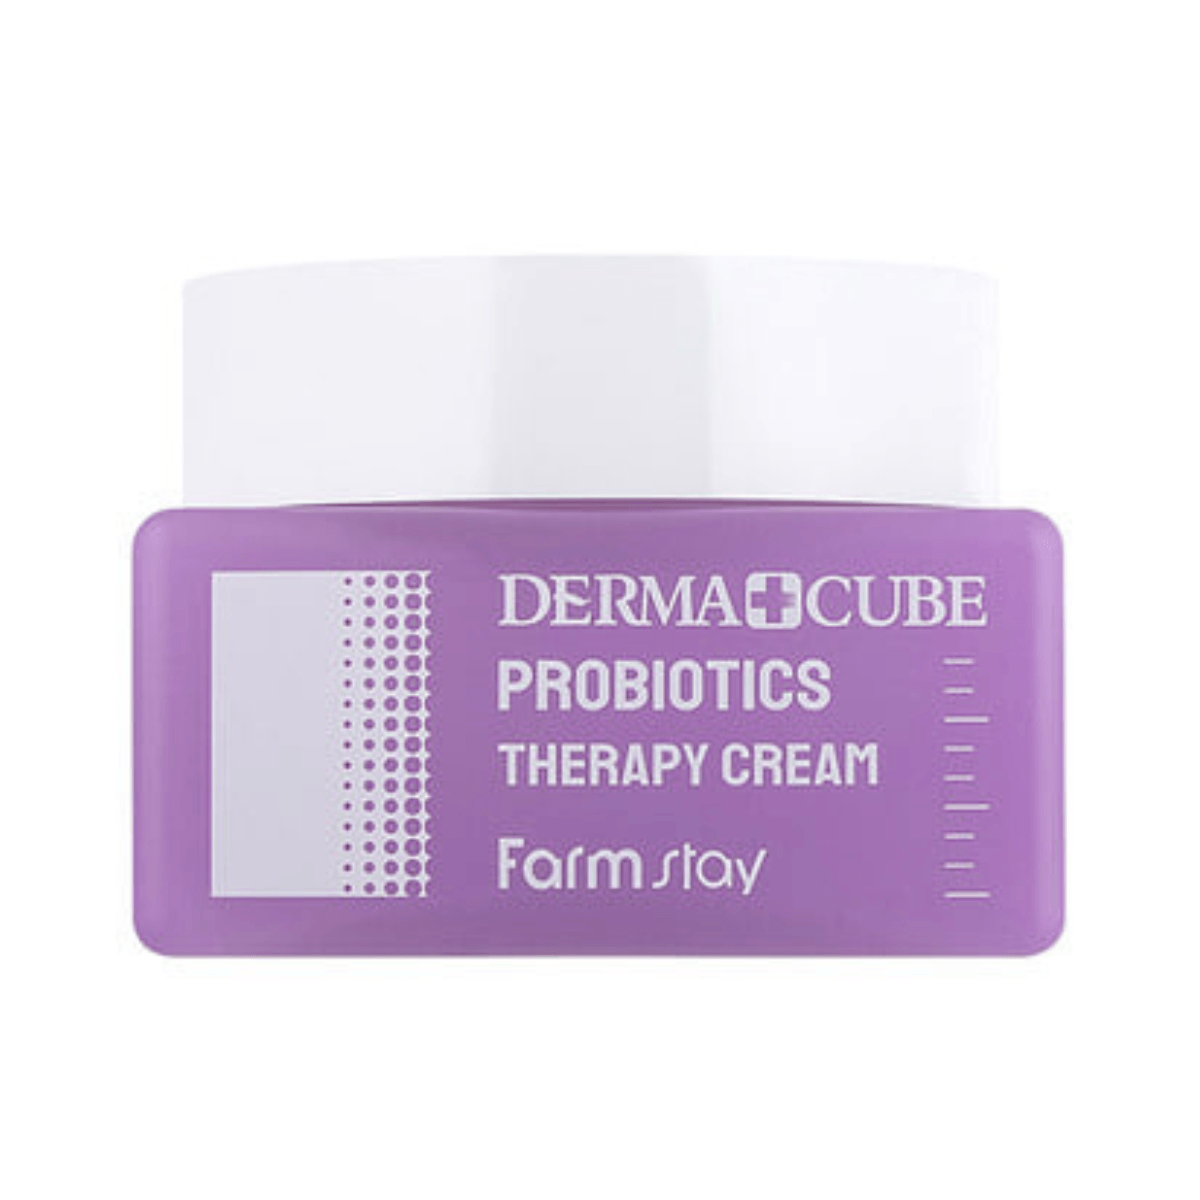 Farmstay - Derma Cube Probiotics Therapy Cream - Korea skincare day cream - Ushops